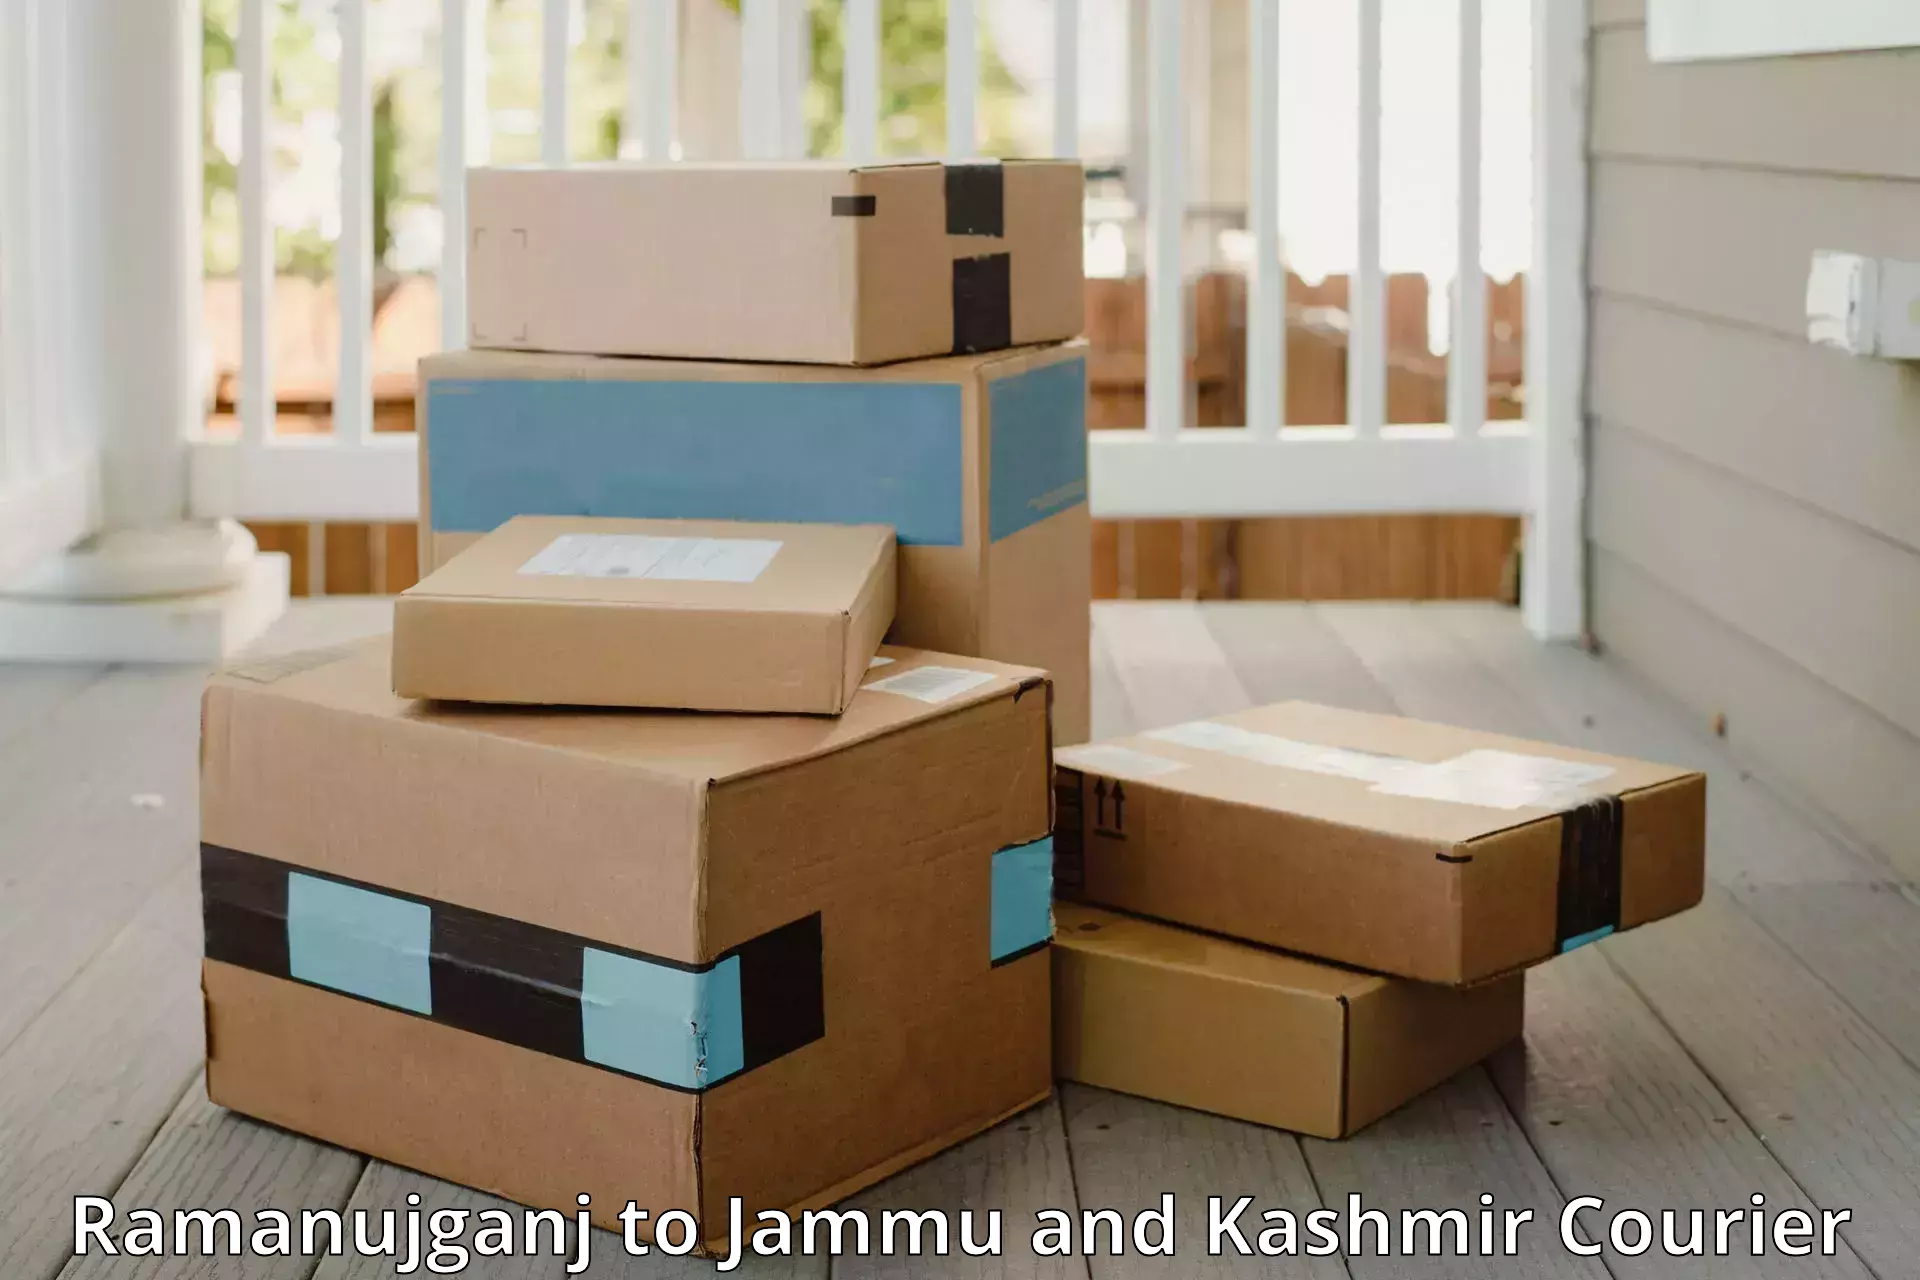 Baggage delivery optimization Ramanujganj to Srinagar Kashmir